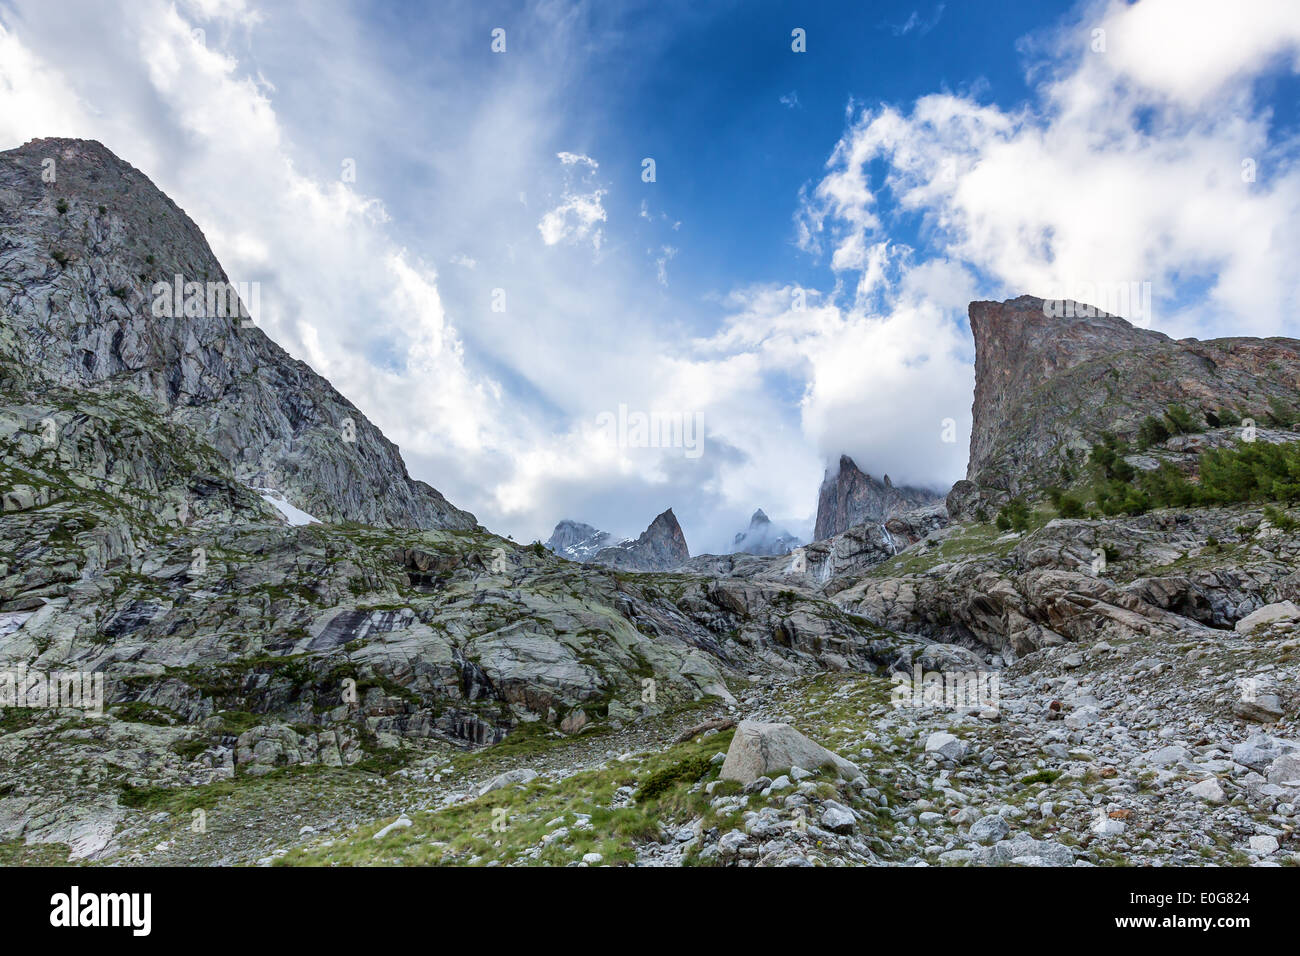 Una bella vista verso il massiccio del Monte Bianco da parte italiana nei pressi di Courmayeur, Italia, Alpi, UE Foto Stock